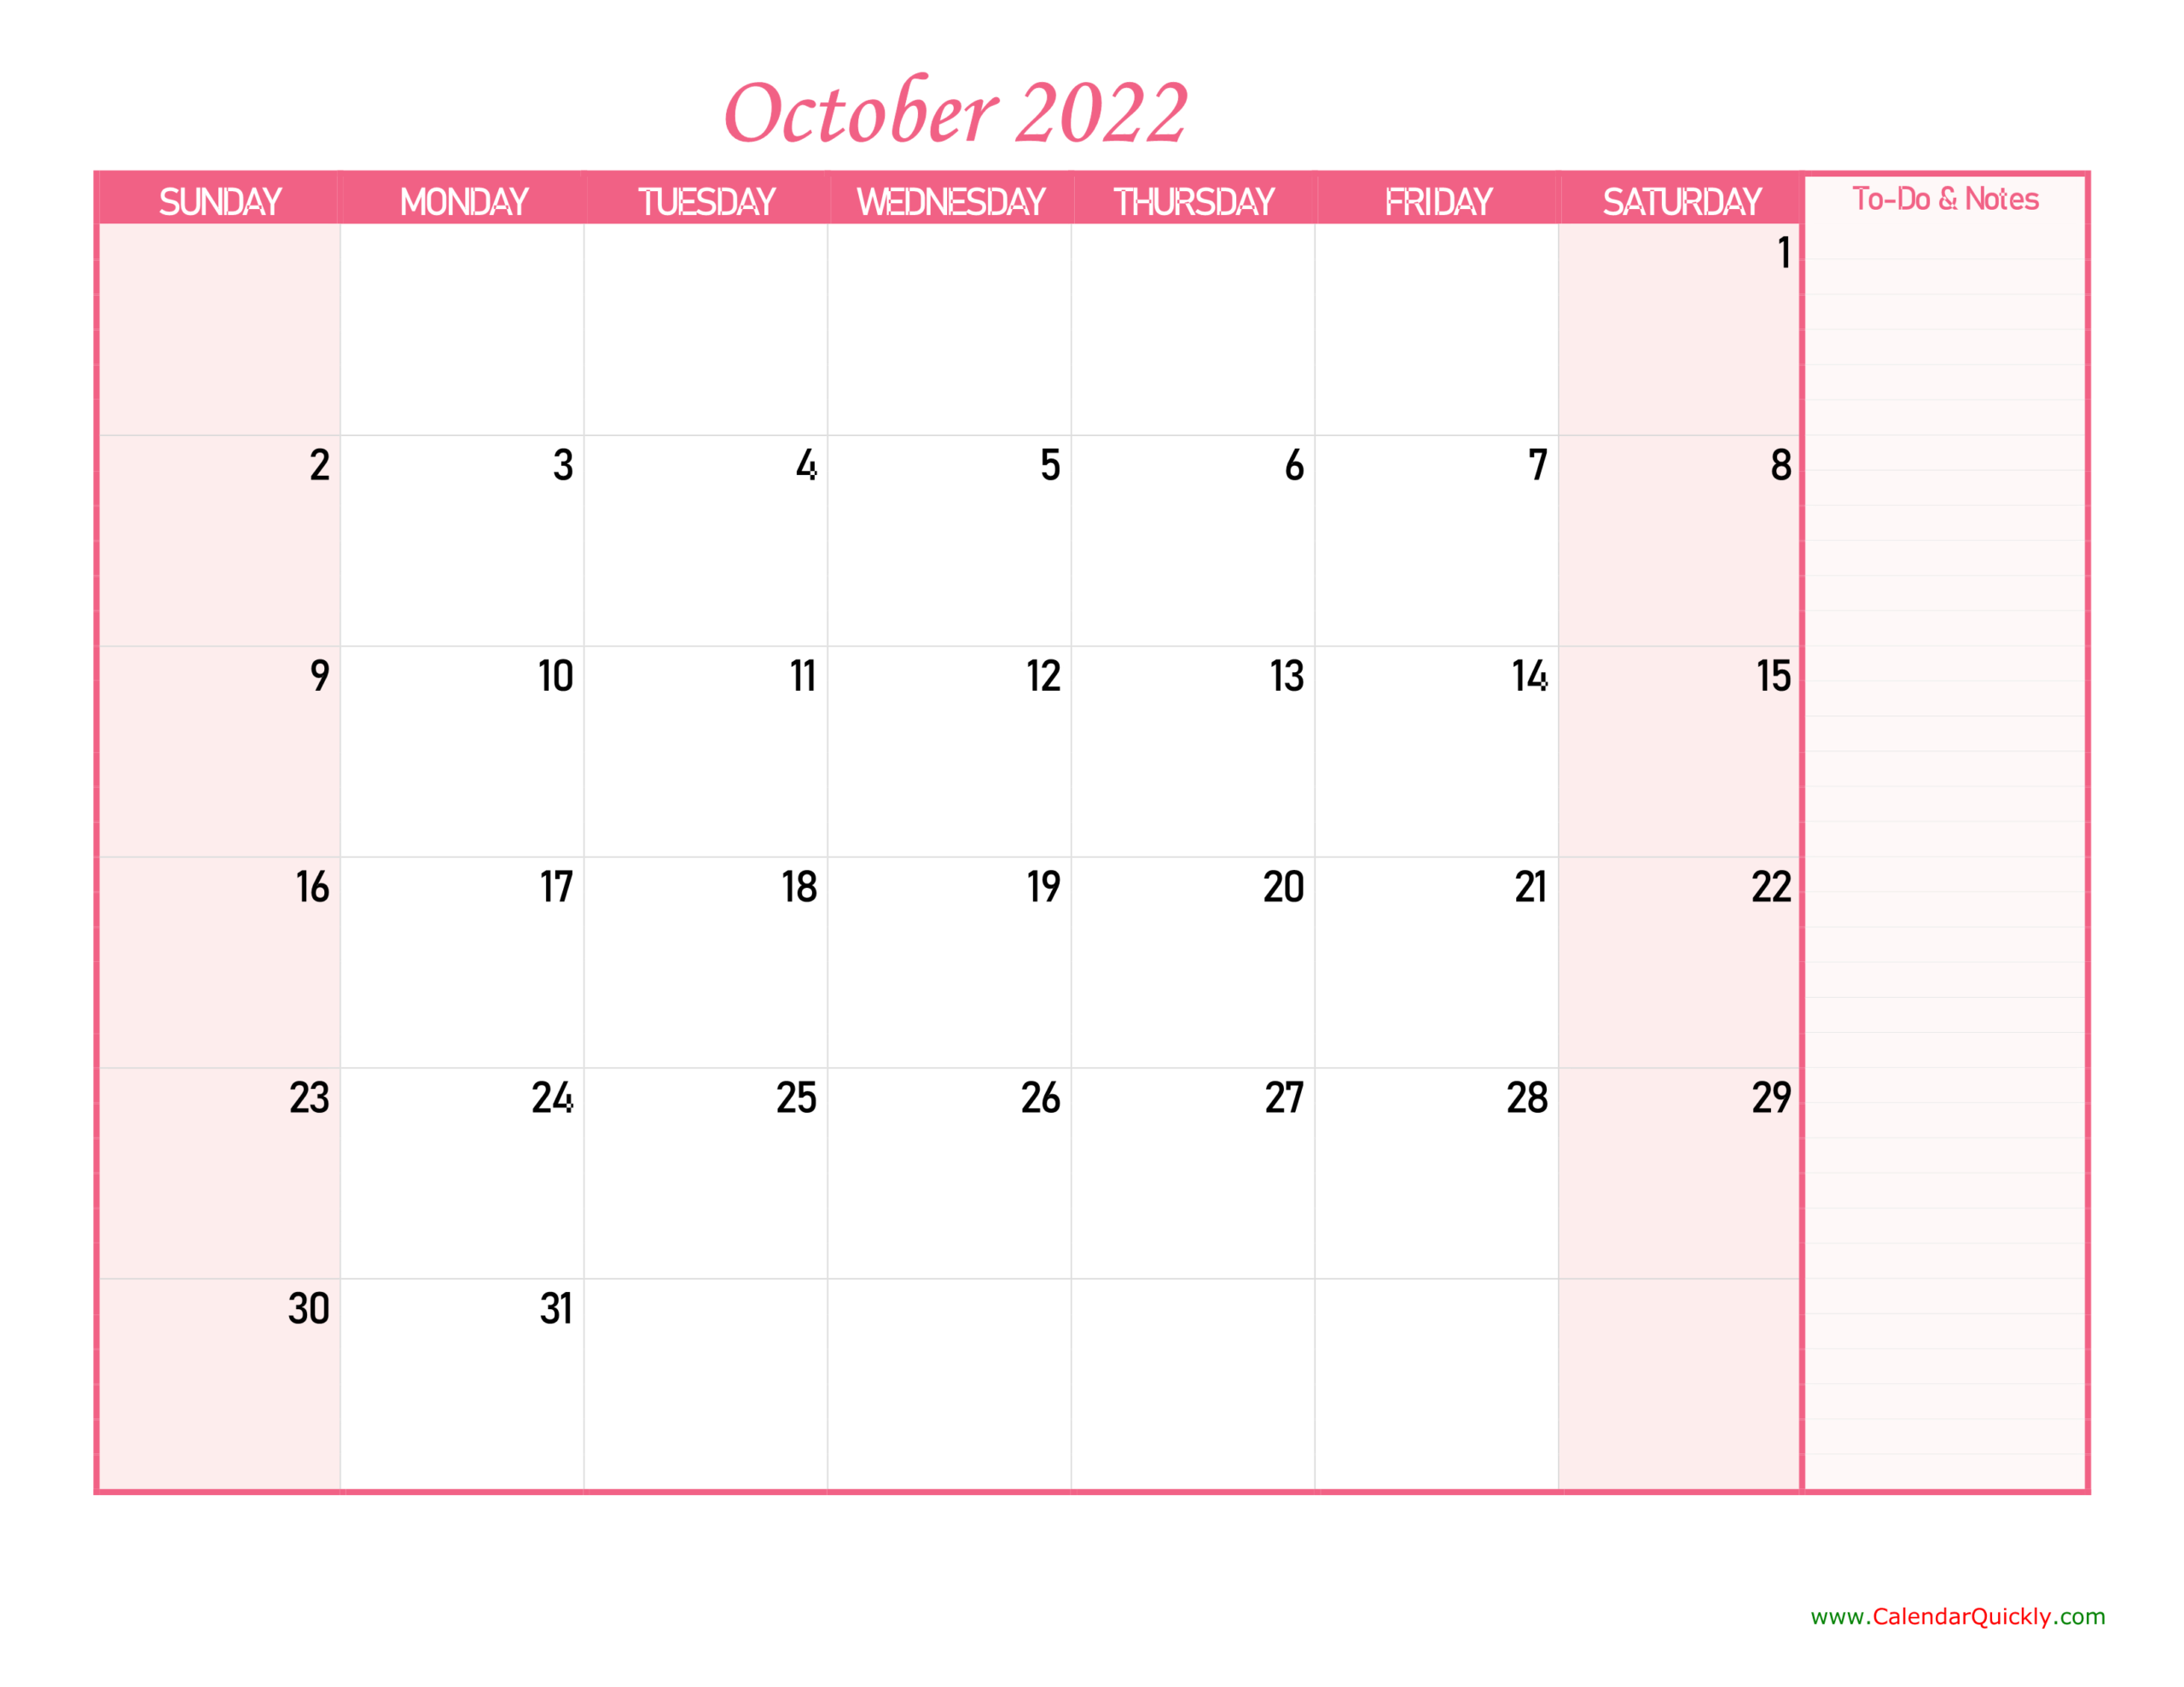 October Calendar 2022 With Notes | Calendar Quickly